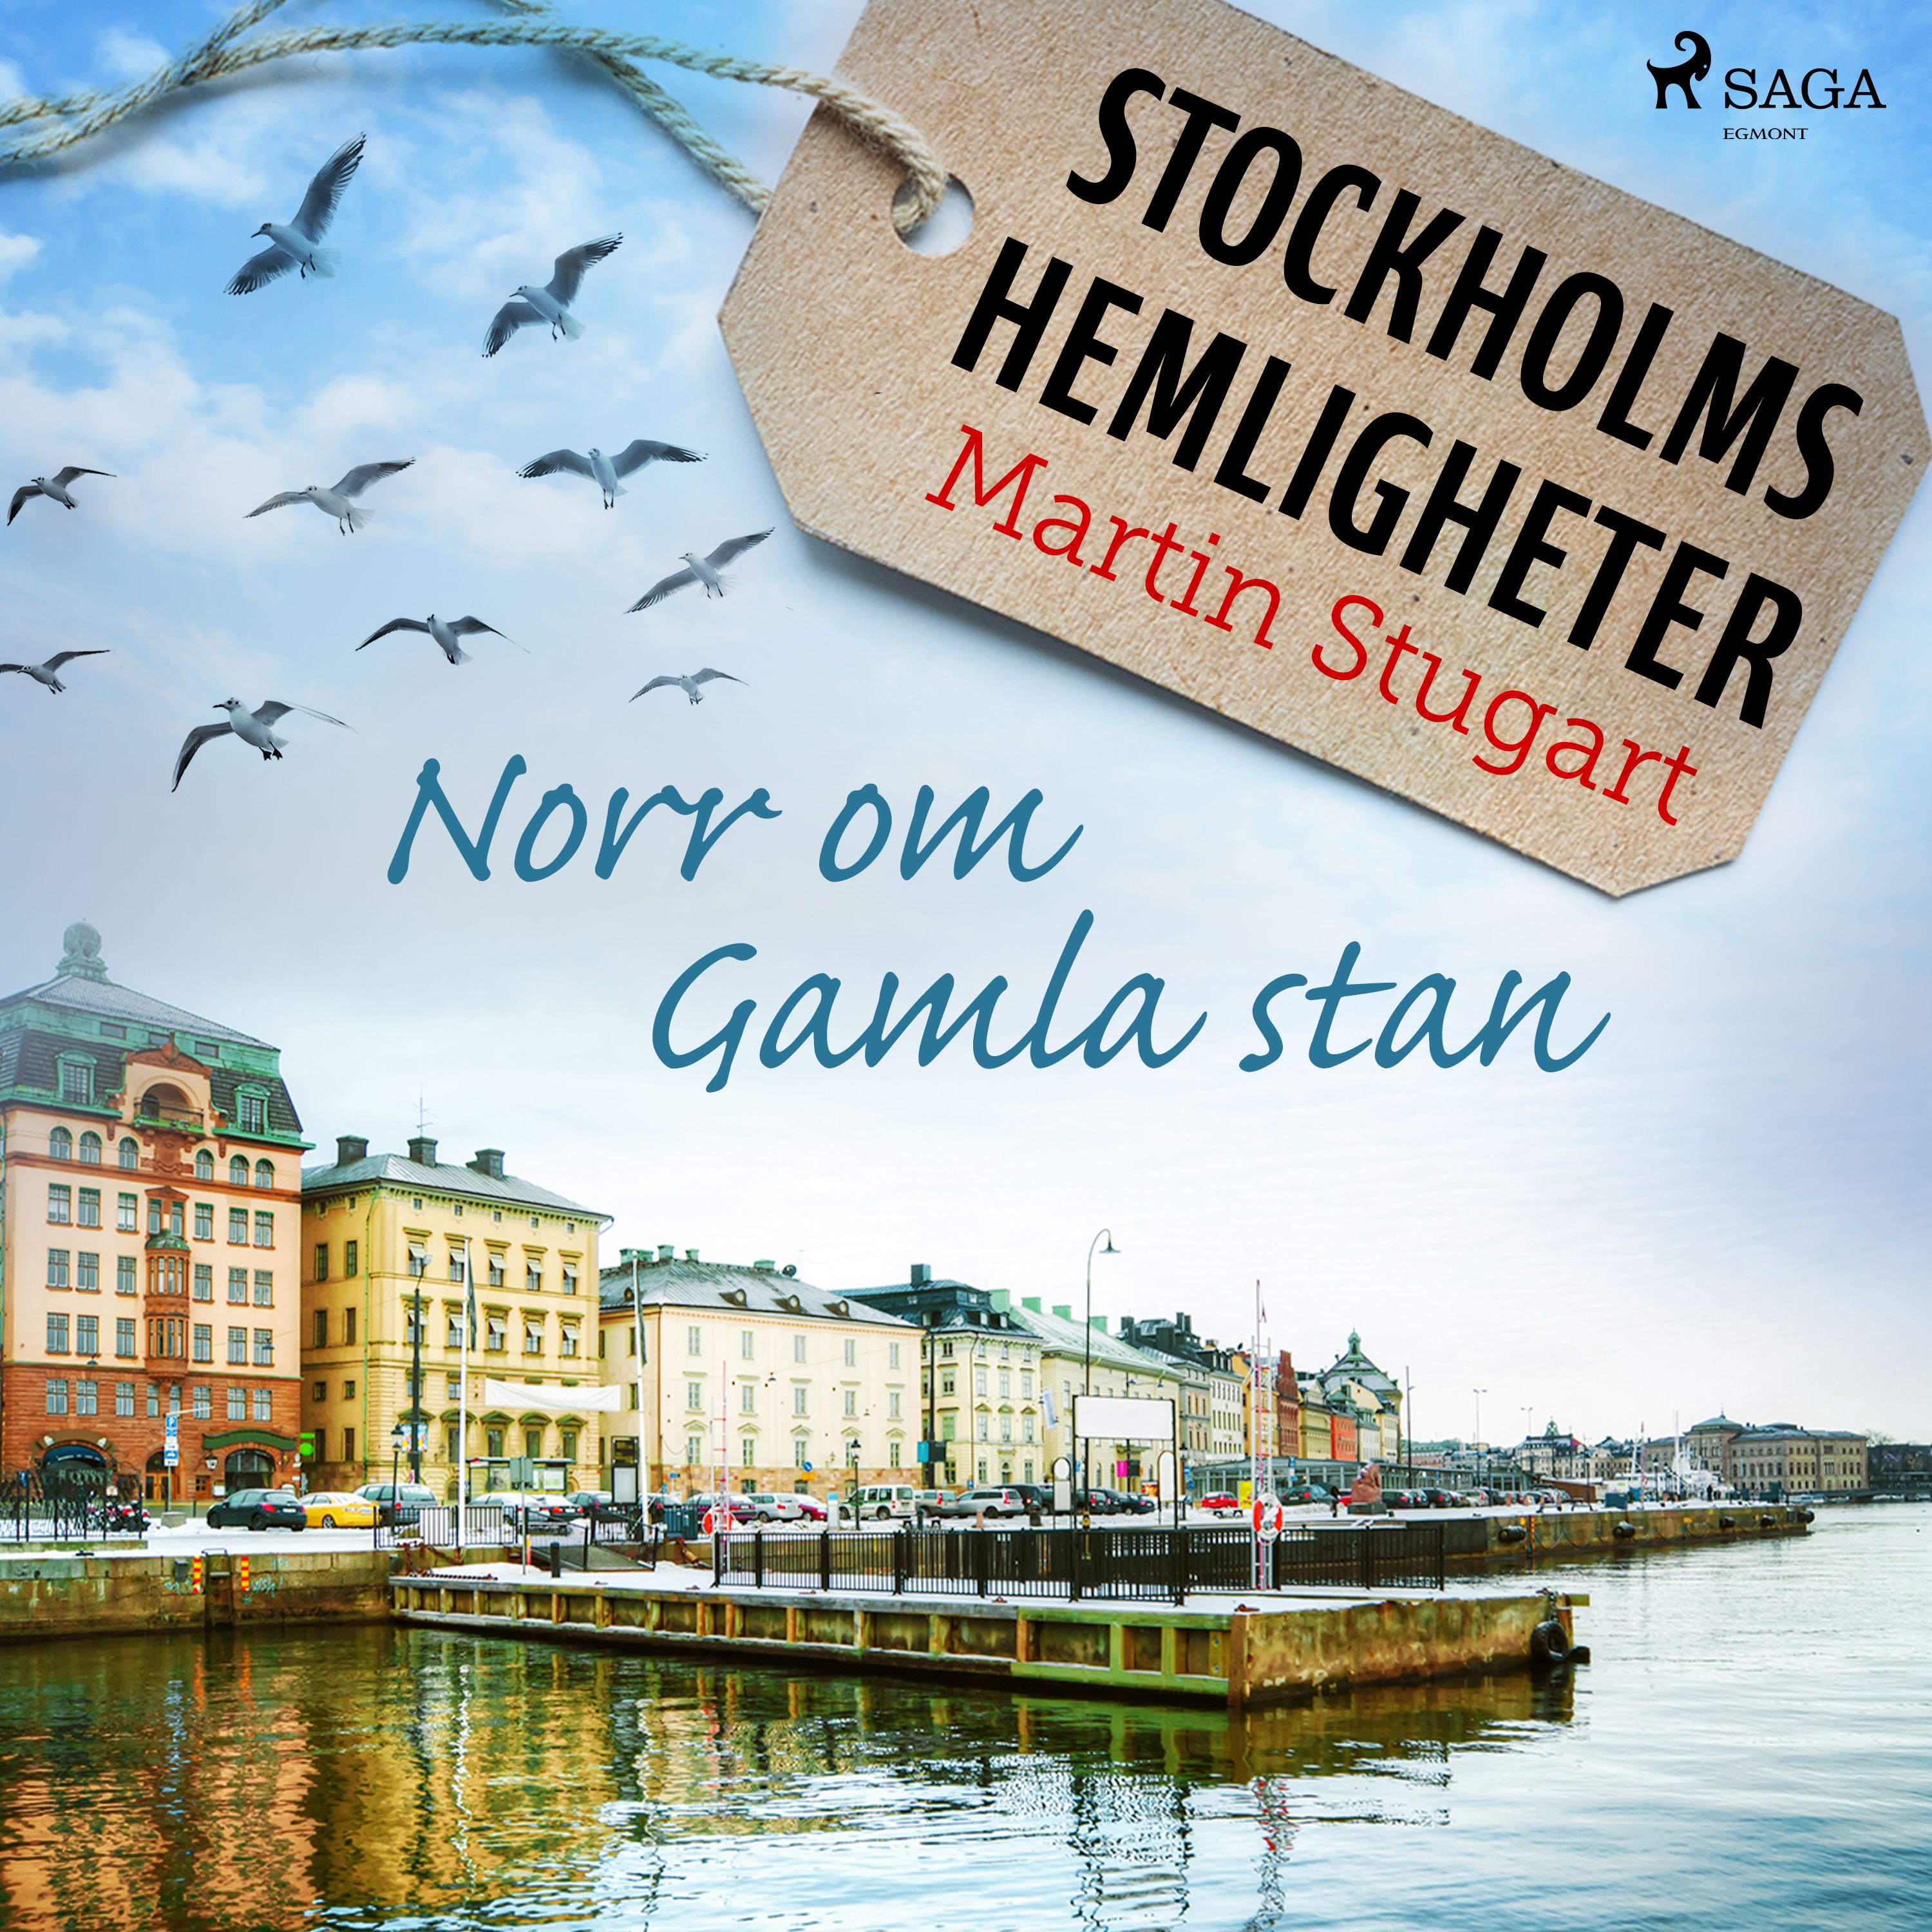 Stockholms hemligheter: Norr om Gamla stan, ljudbok av Martin Stugart